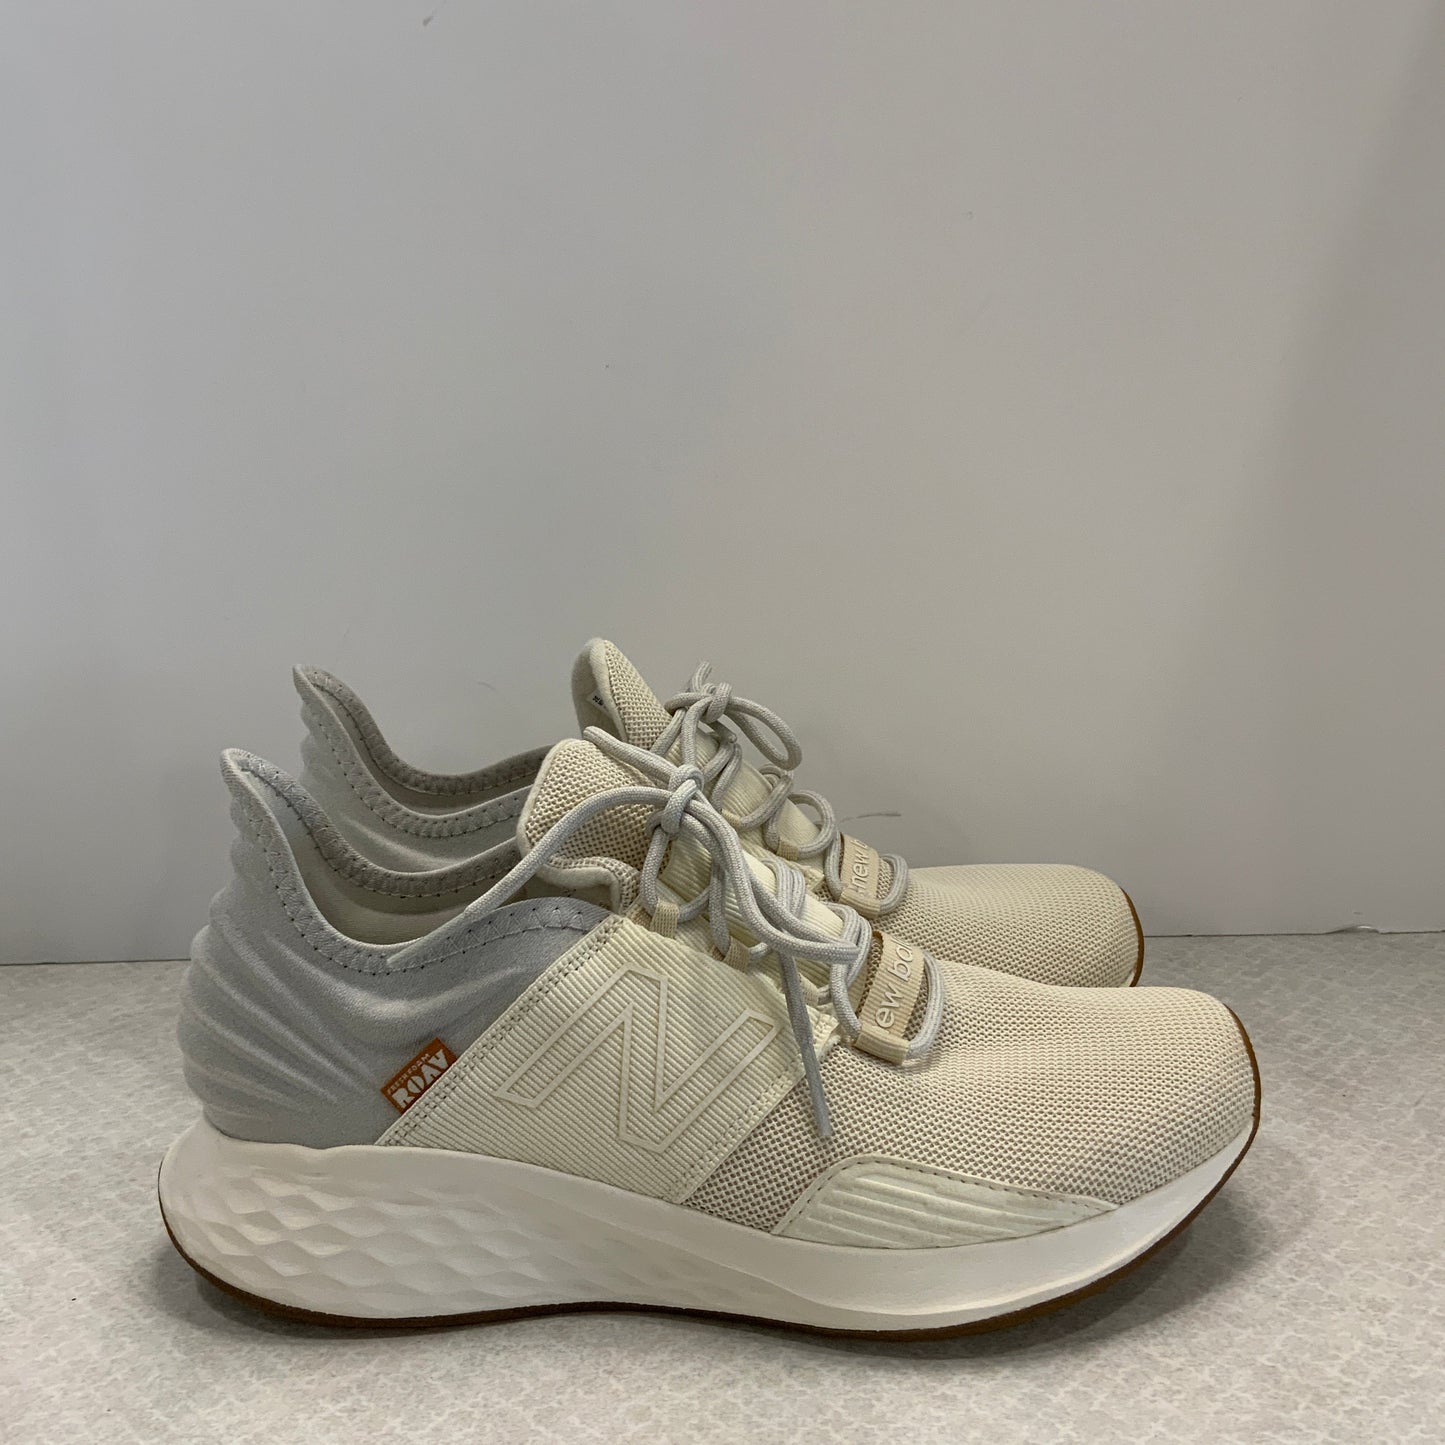 Cream Shoes Athletic New Balance, Size 8.5